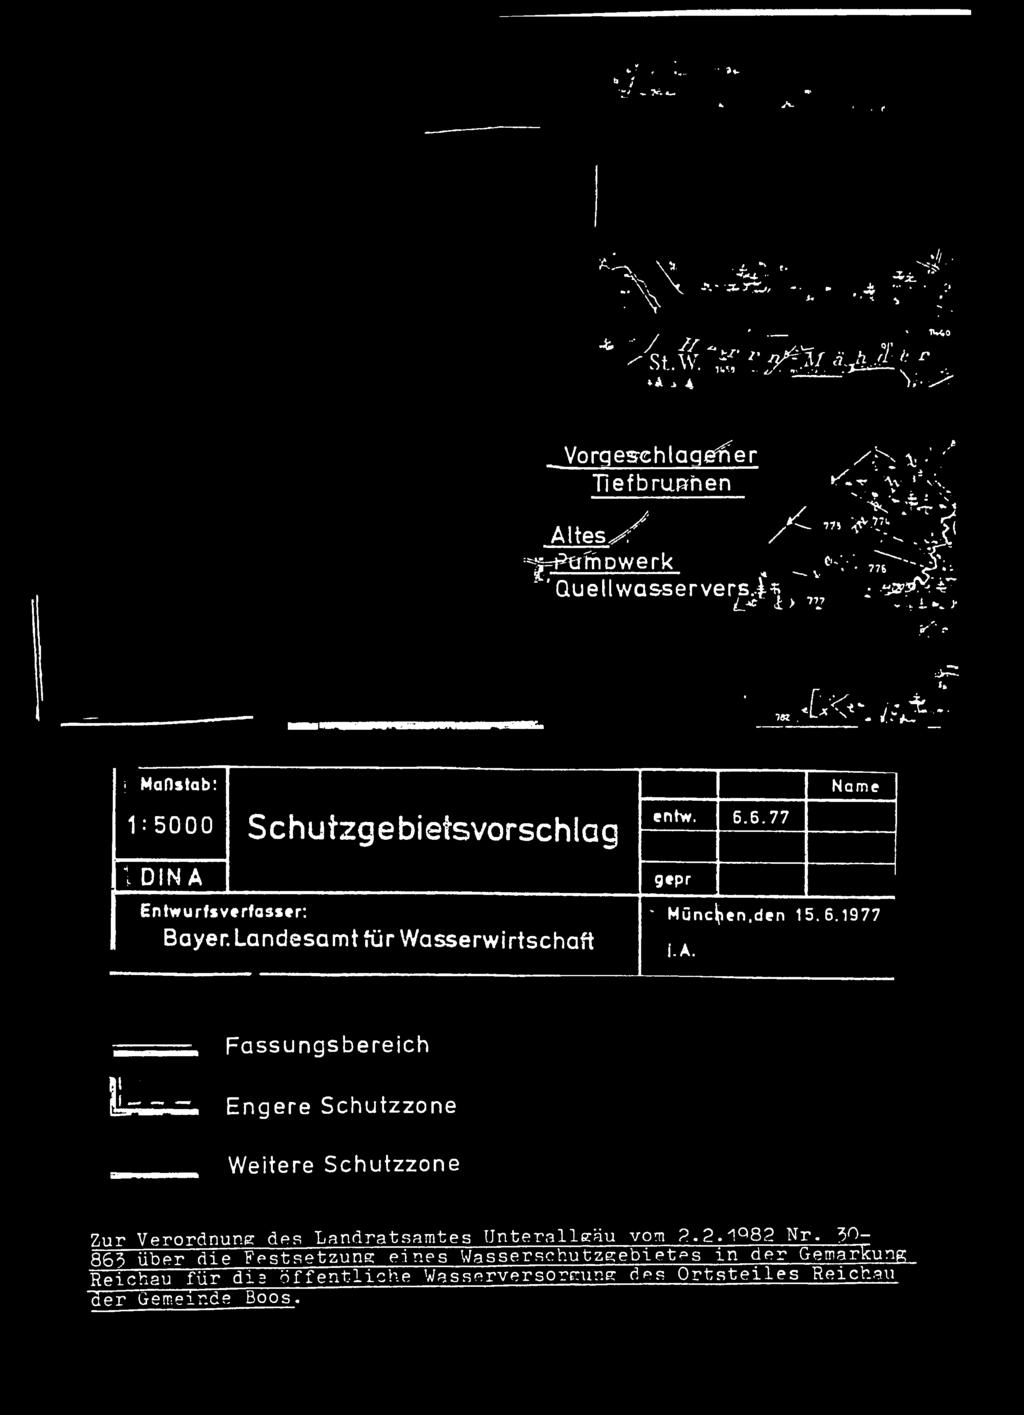 6.77 1 D I N A Entwurfsverfasser: Bayer. Landesamt für Wasserwirtschaft gepr ' München,den 15.6.1977 i.a. Fassungsbereich L ü Engere Weitere Zur Verordnung des Landratsamtes Unterallgäu vom 2.